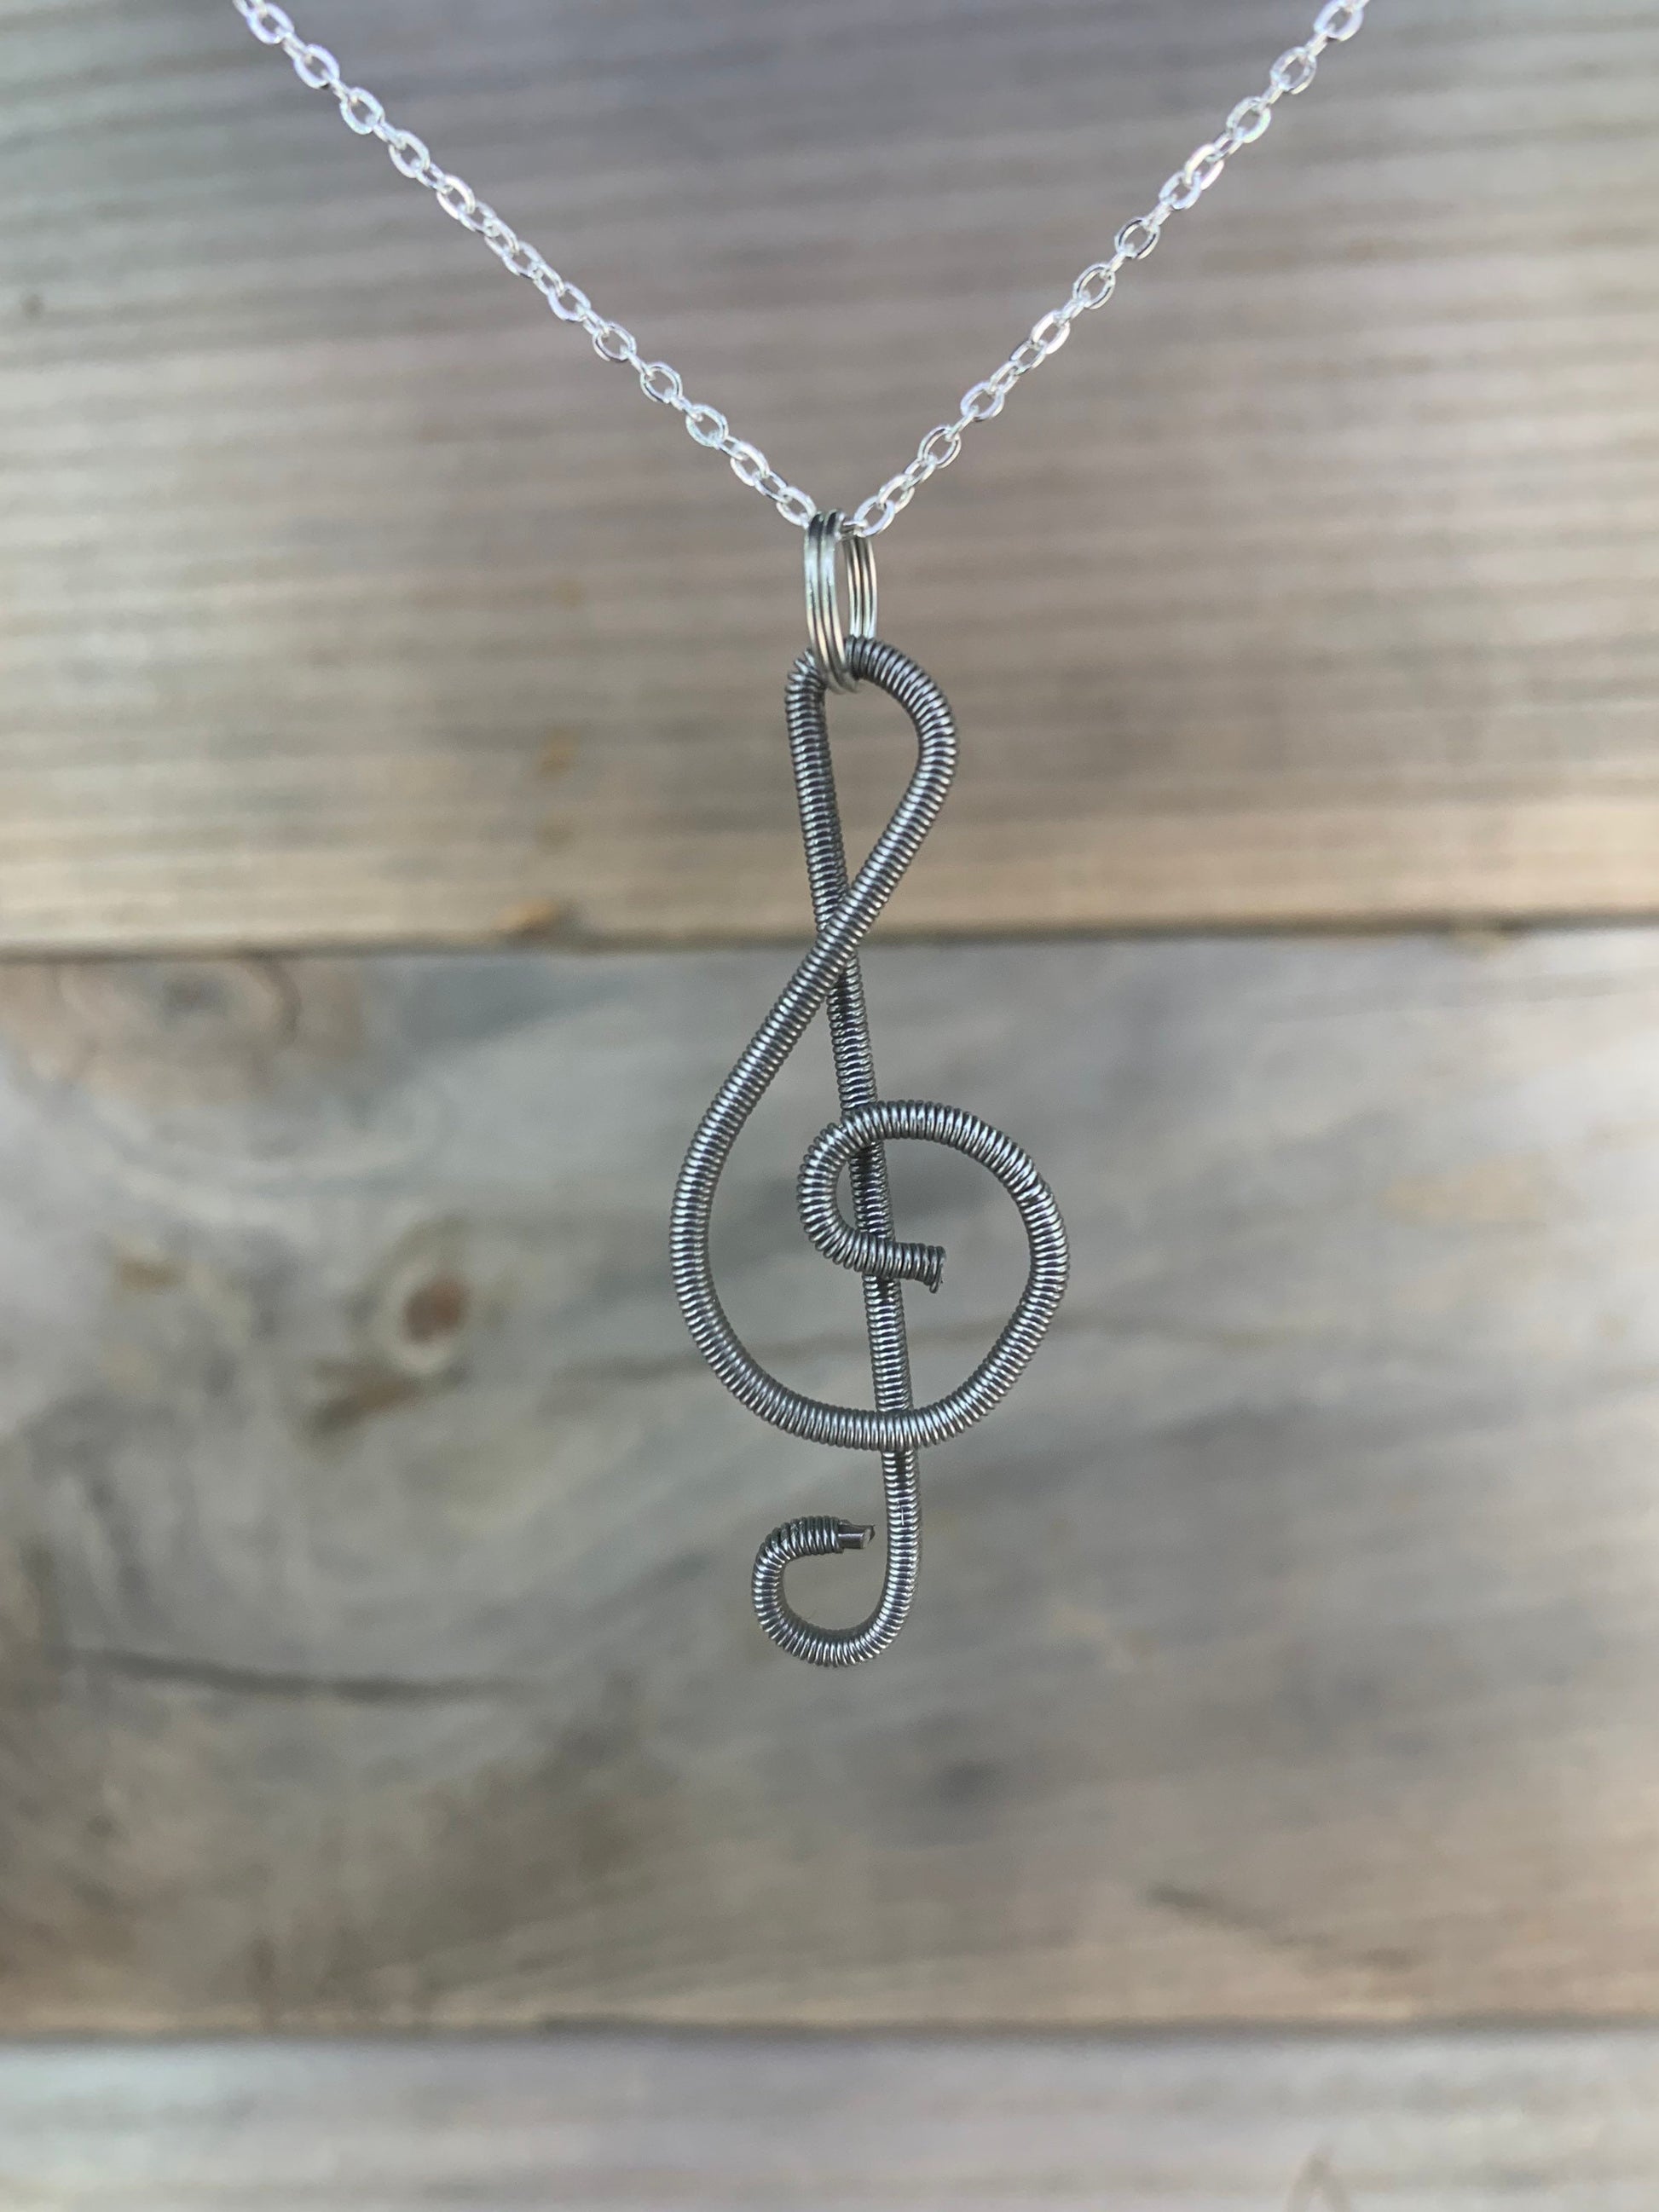 Piano Wire Treble Clef Necklace, Piano Wire Pendant, Treble Clef Pendant, Gift for Pianist, Gift for Musician, Piano Wire Jewelry